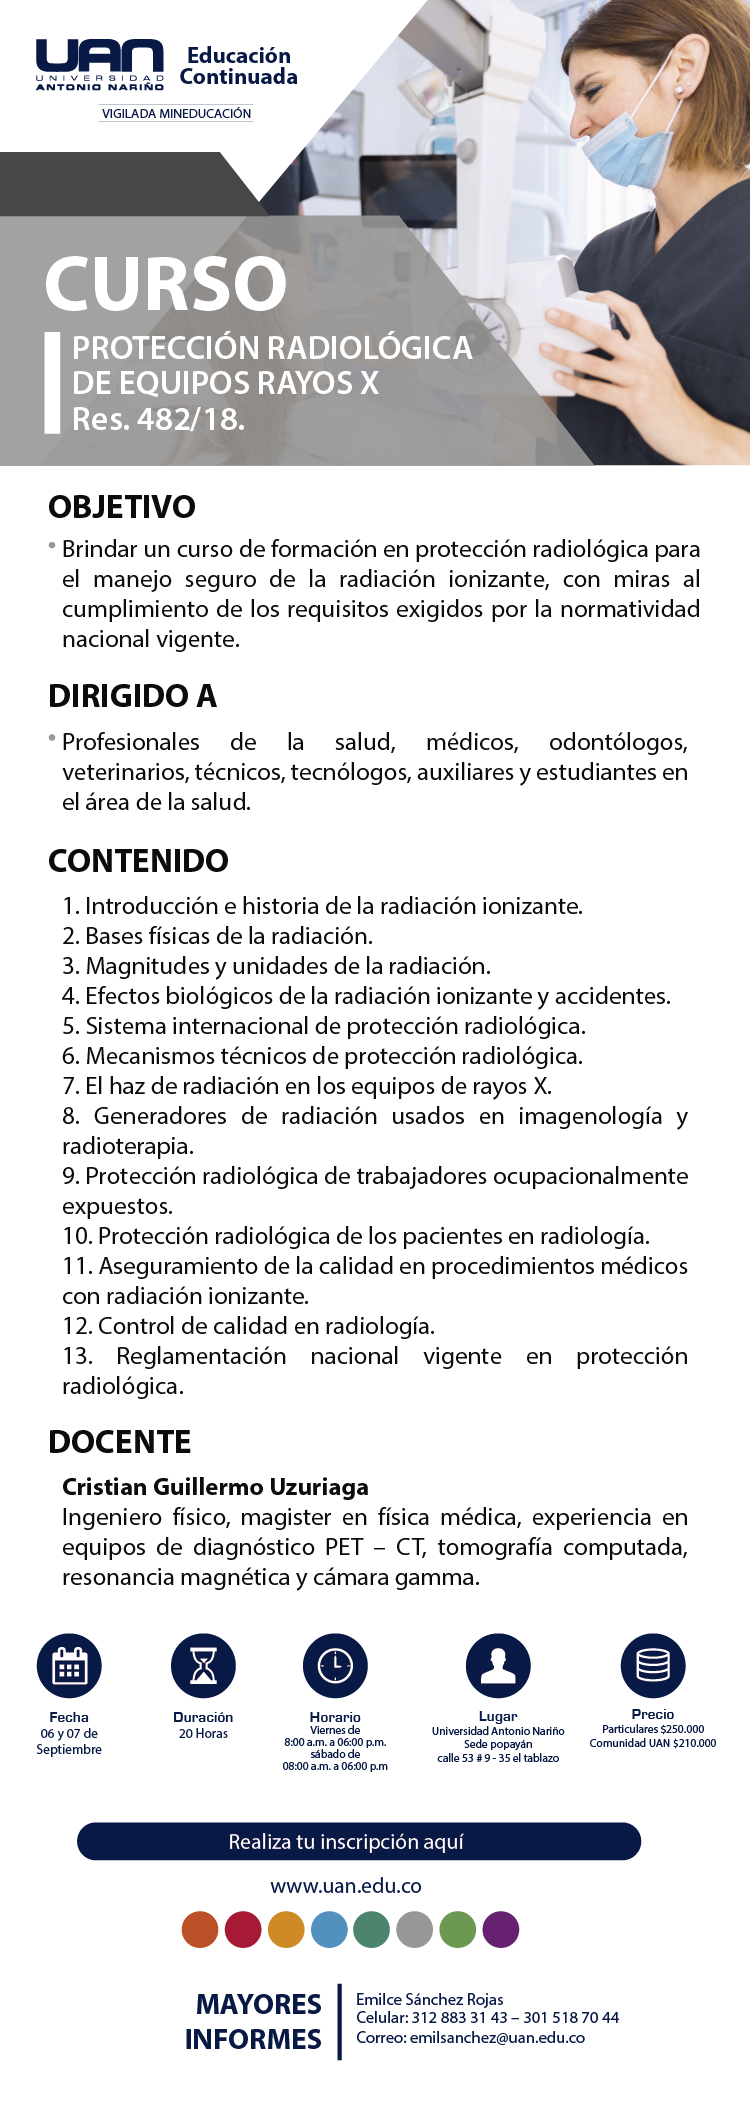 ProteccionRadiologicaEquiposRayosXRes482 18 Popayan2019 M